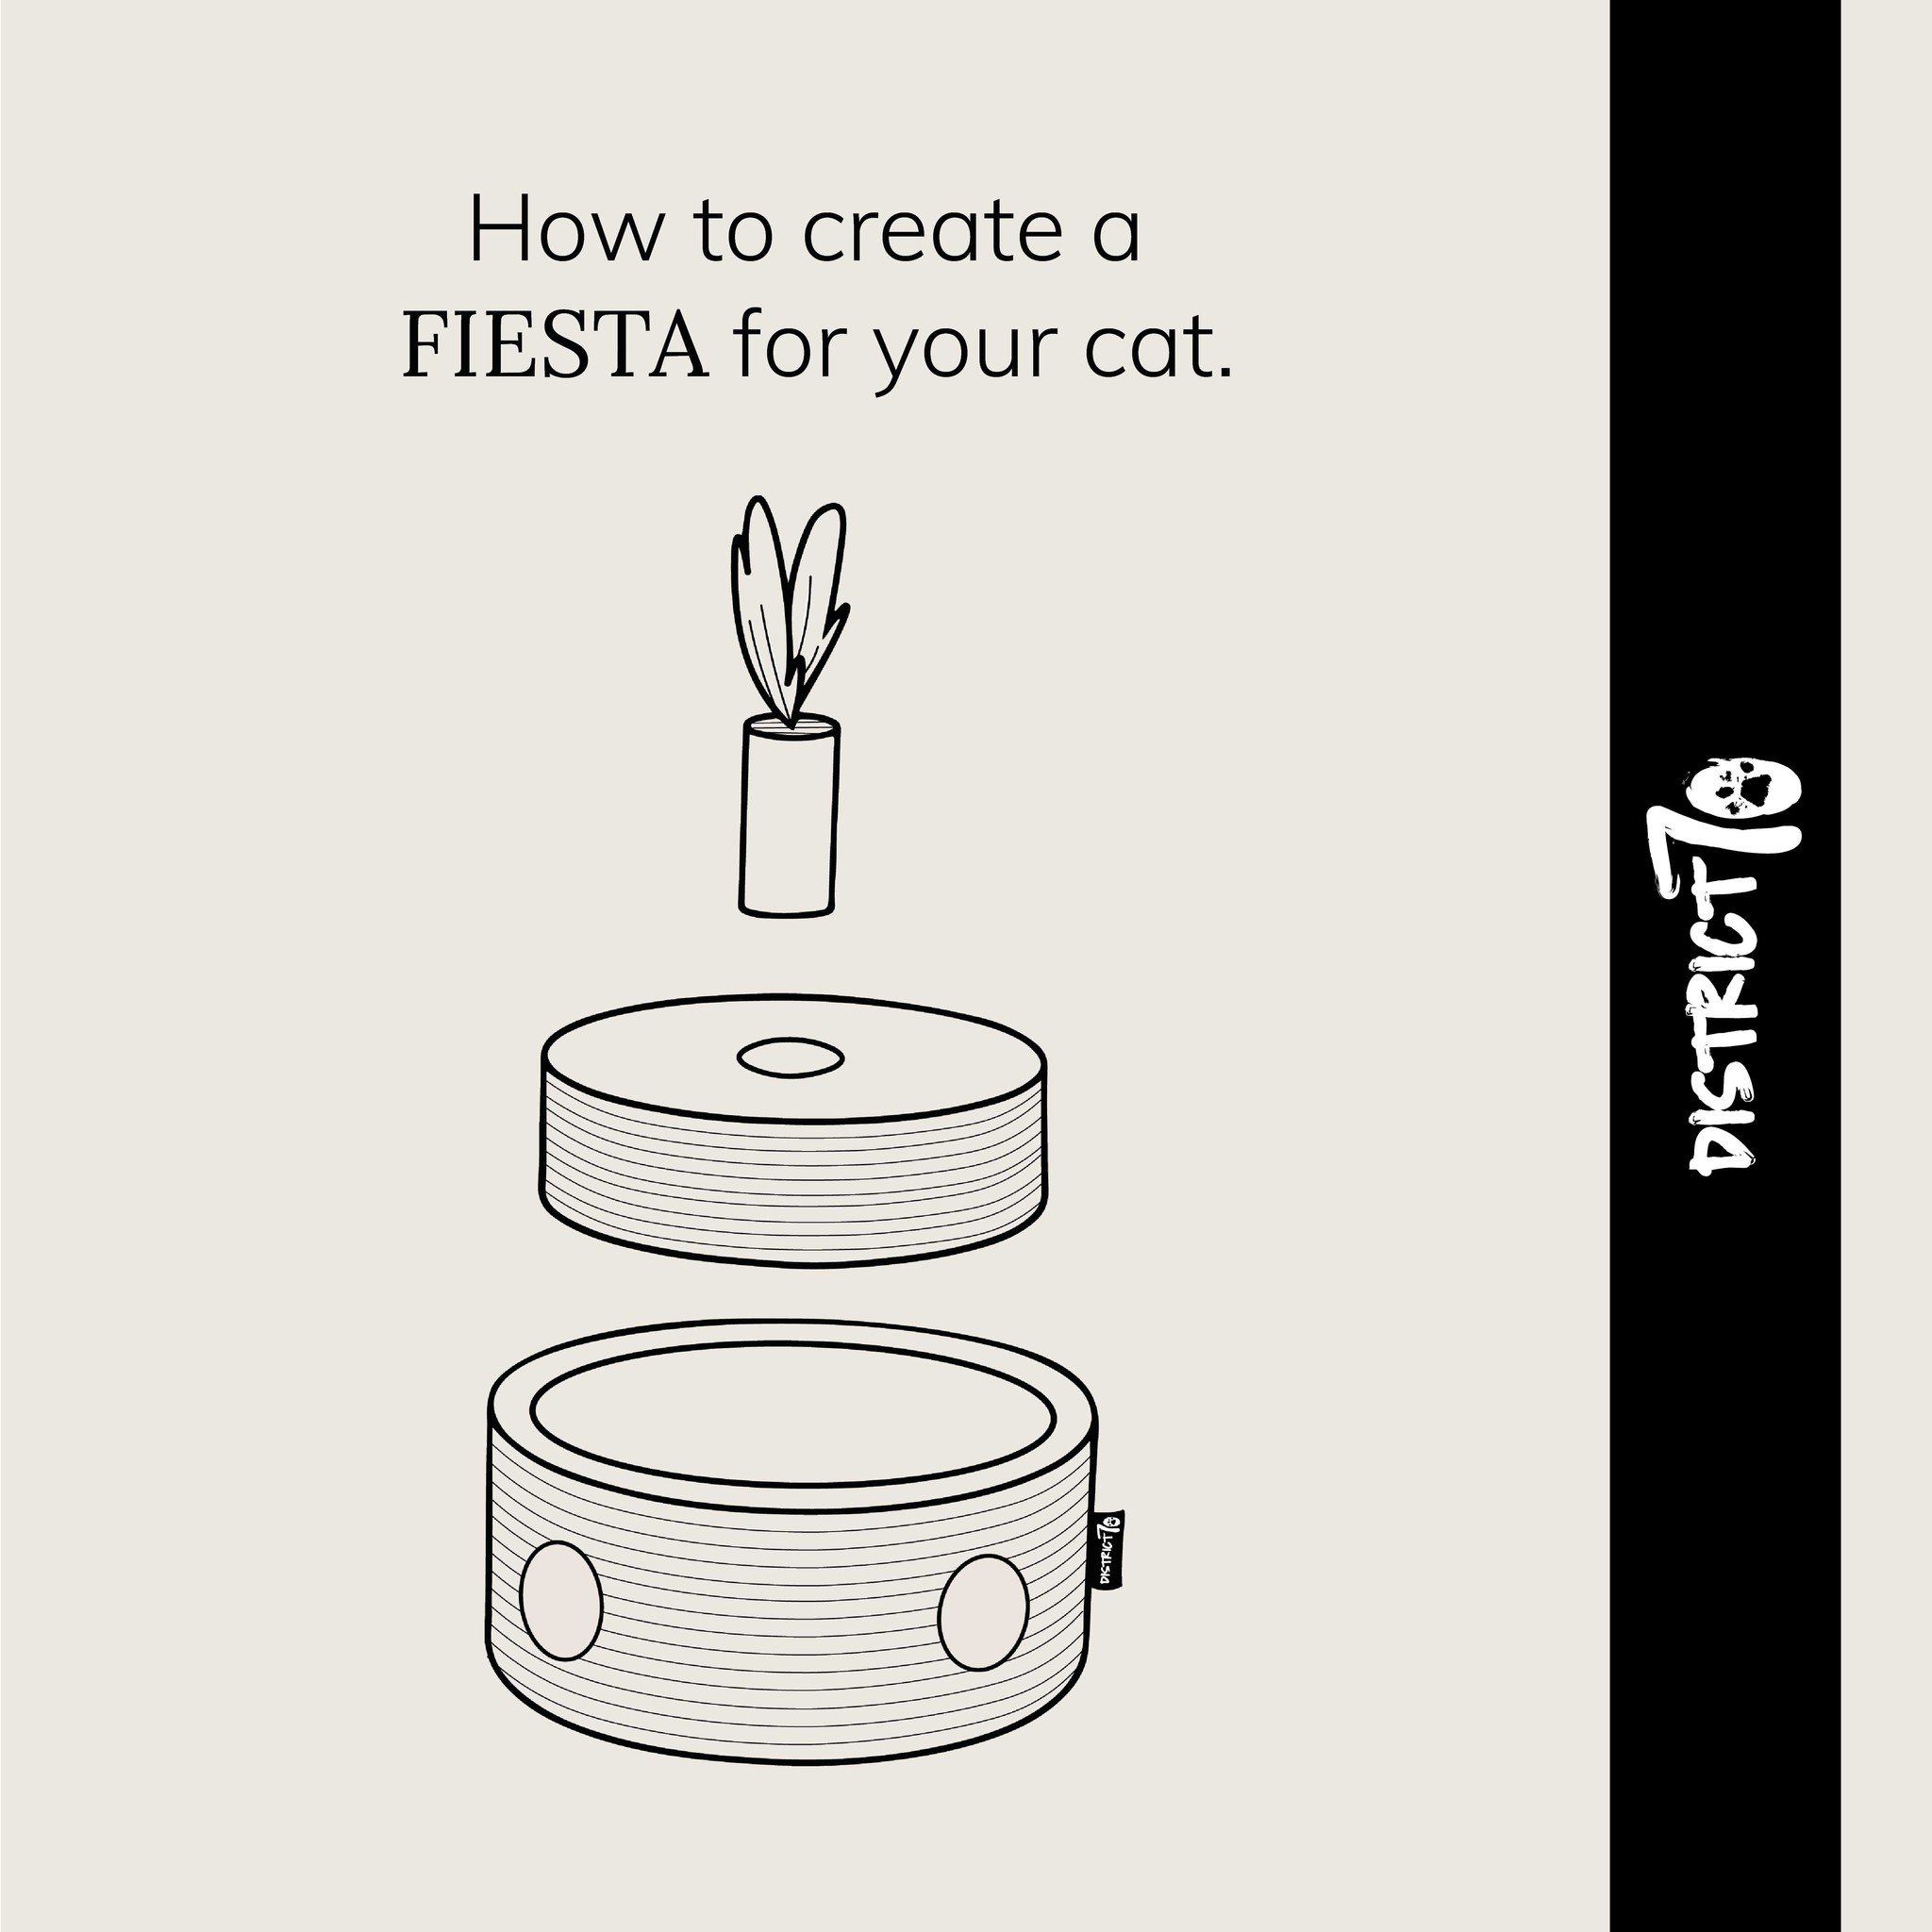 FIESTA - Kartonnen Kattenspeelgoed - Met rinkelend balletje - 25 x 25 x 25 cm-4